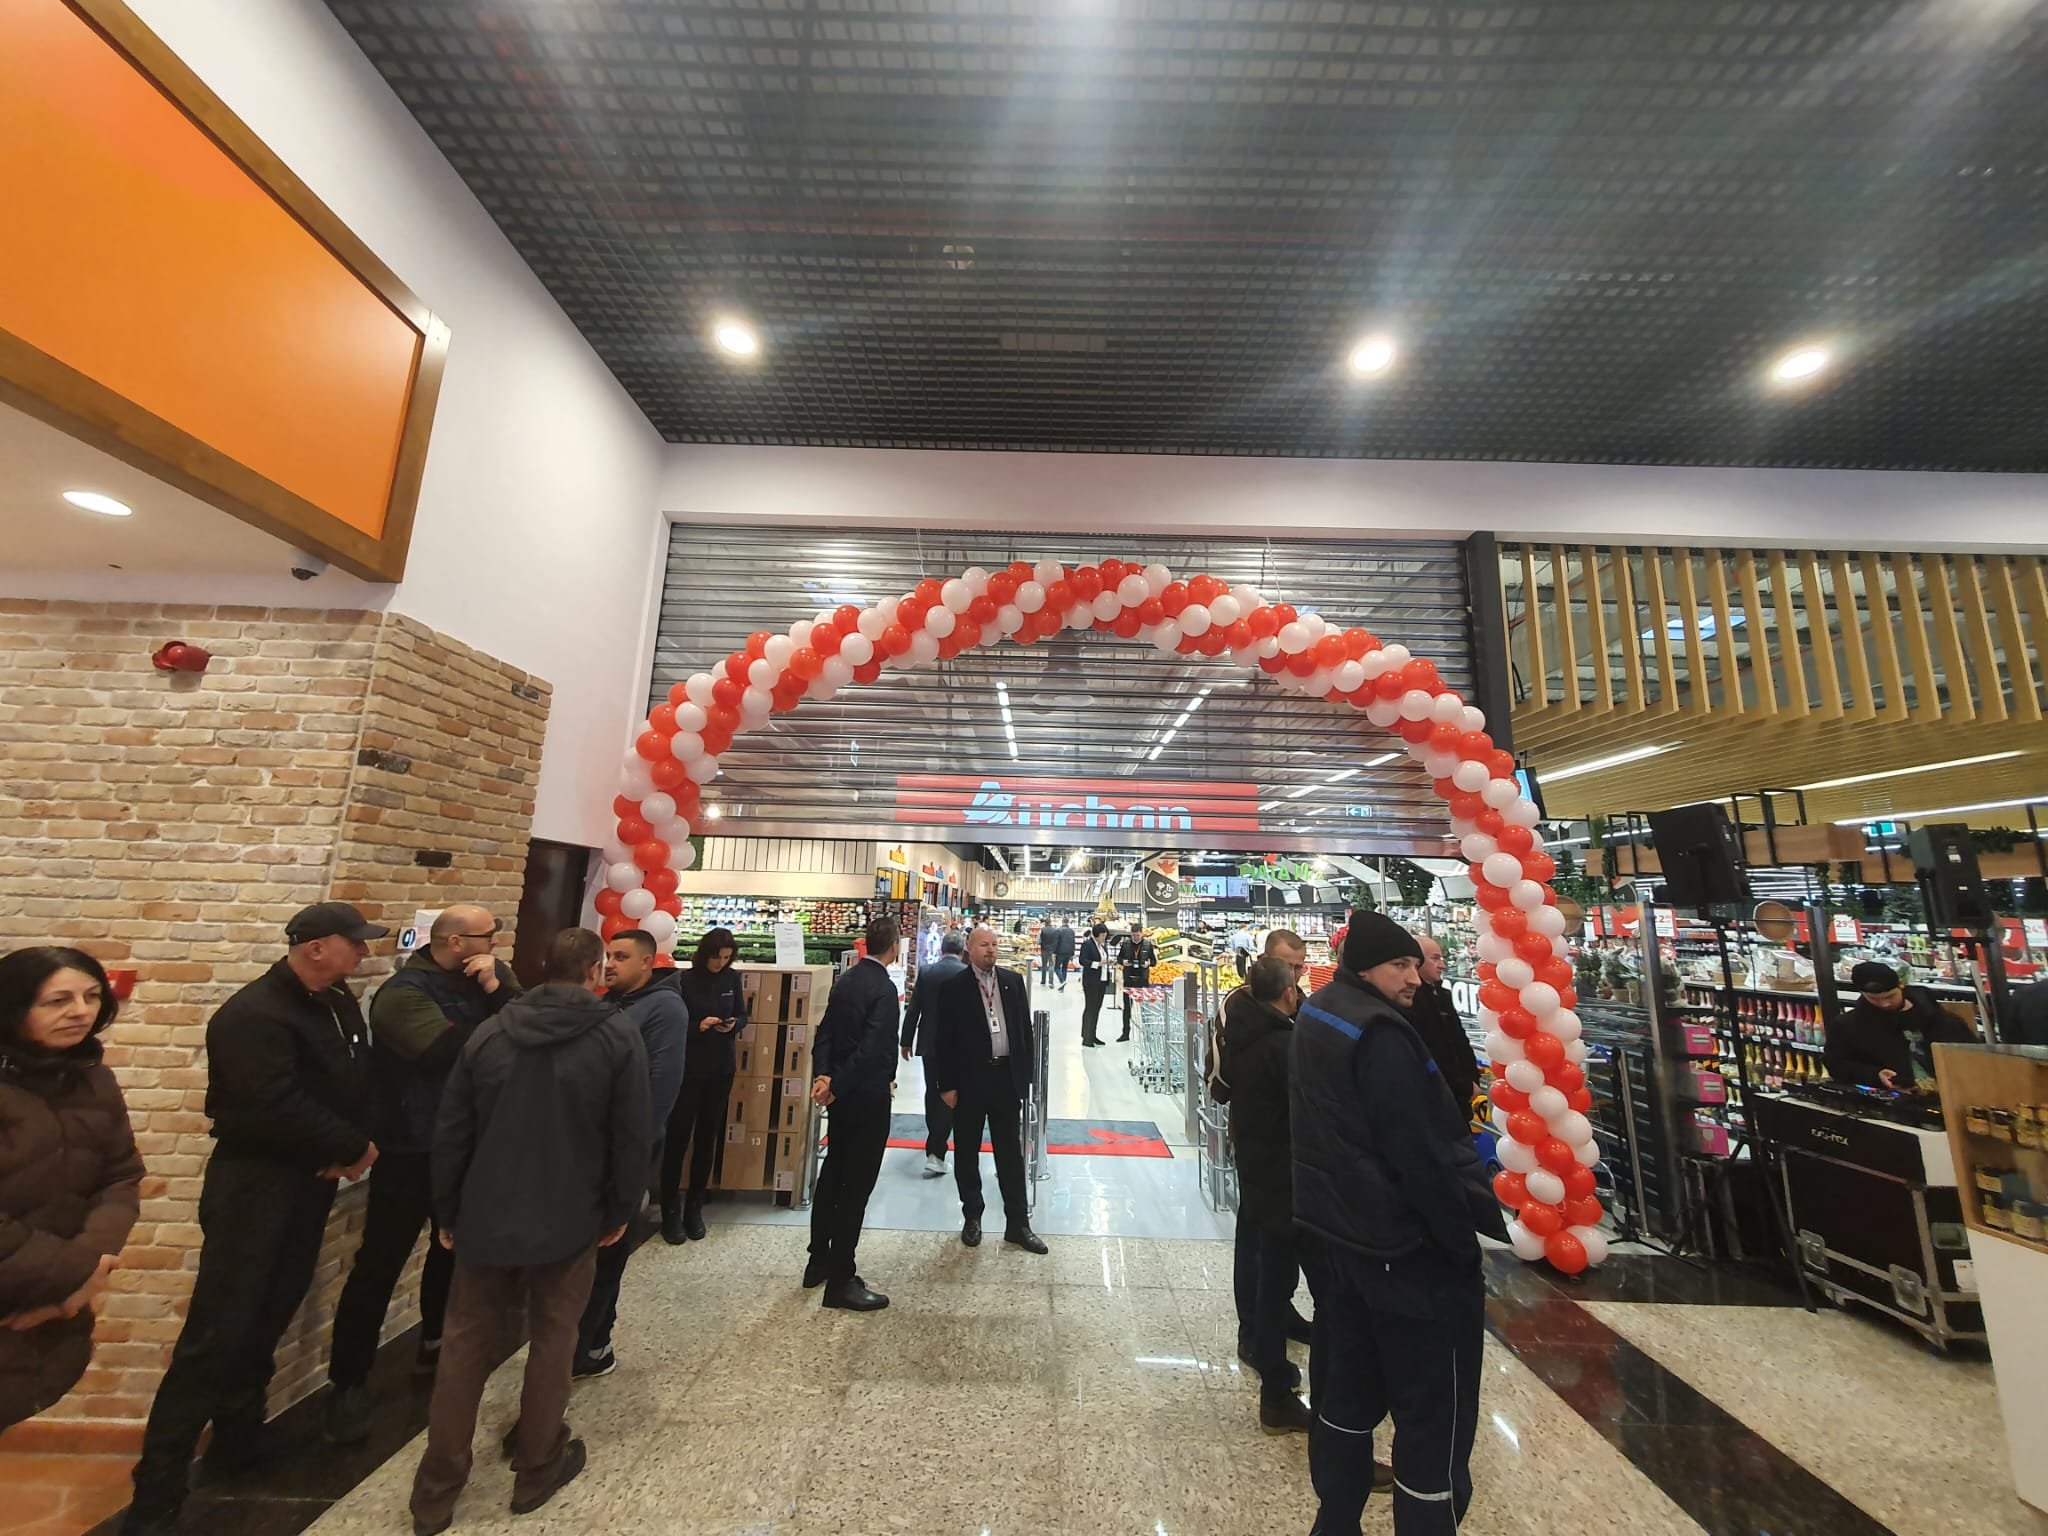  Al doilea proiect Family Market al Iulius Grup inaugurat ieri la Iaşi. Investiţia din Bucum: 12 milioane de euro